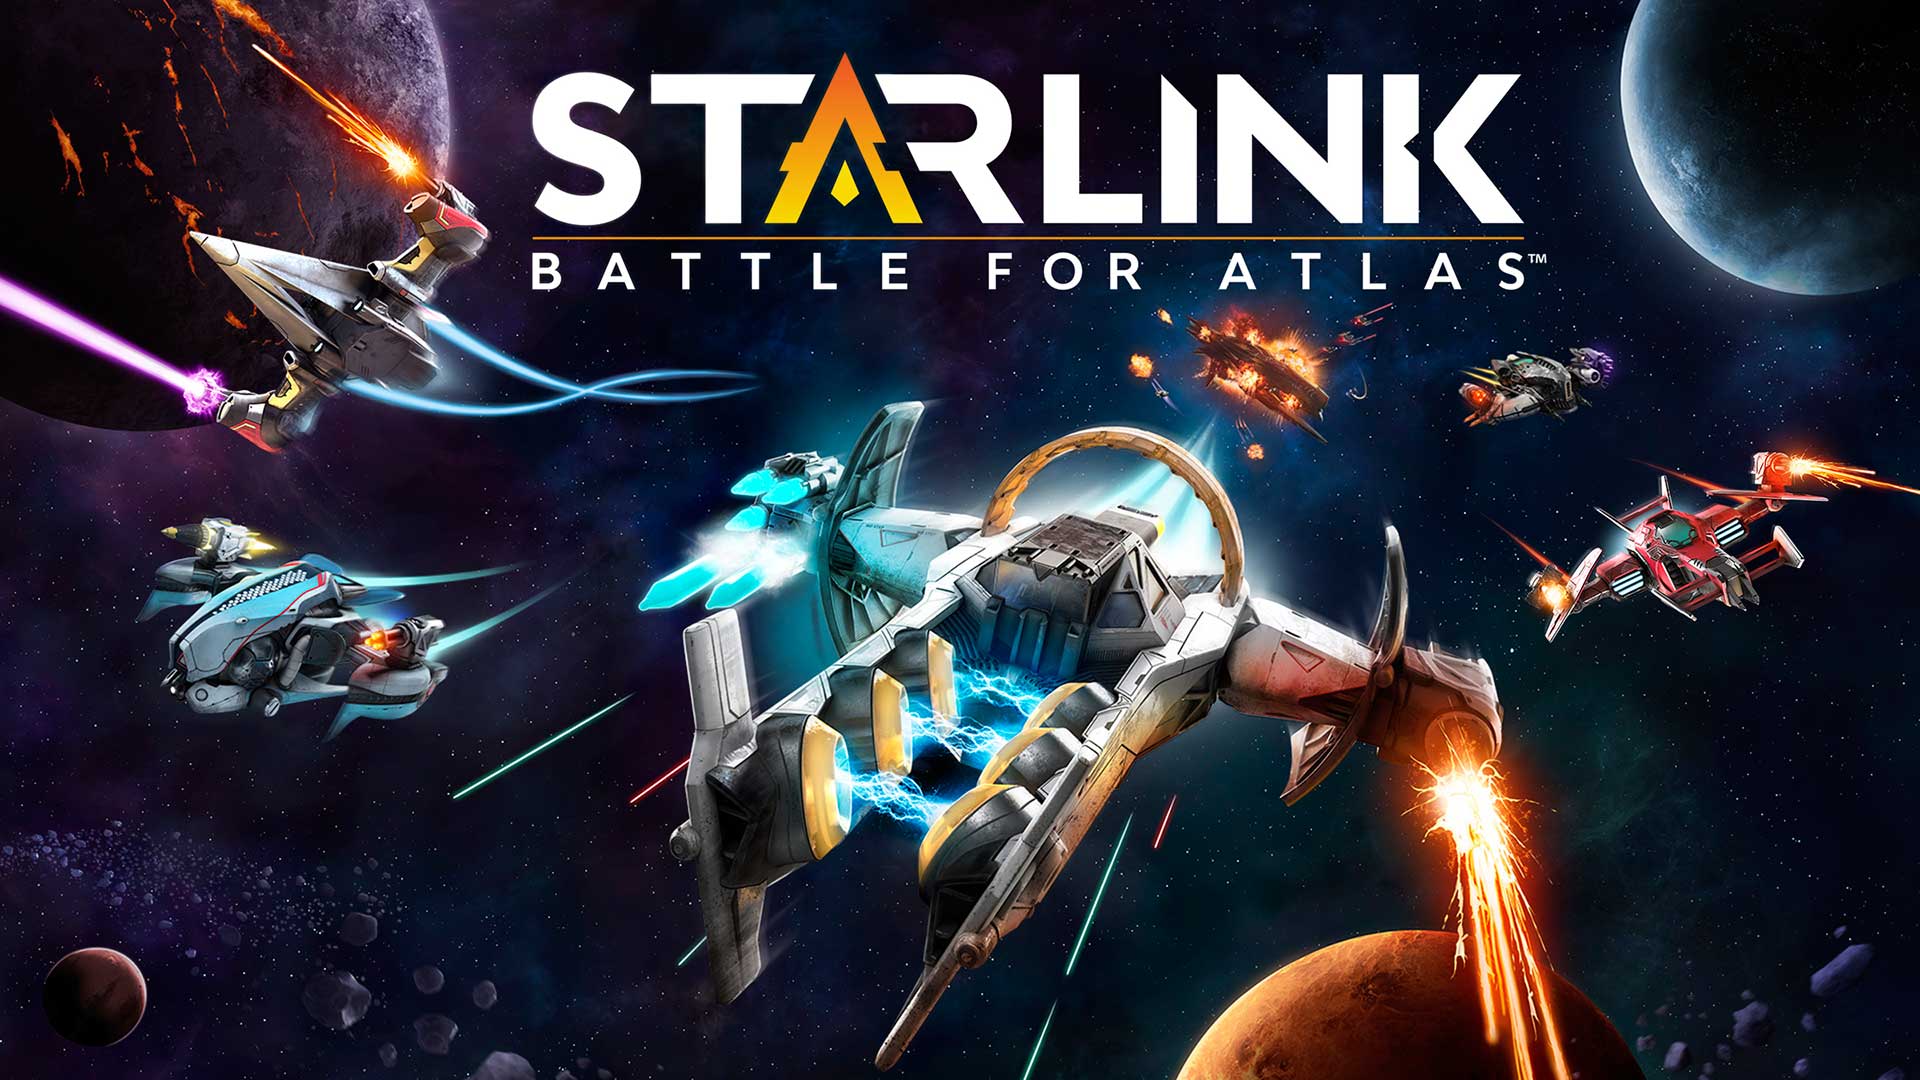 Star Link Battle for Atlas Release Date